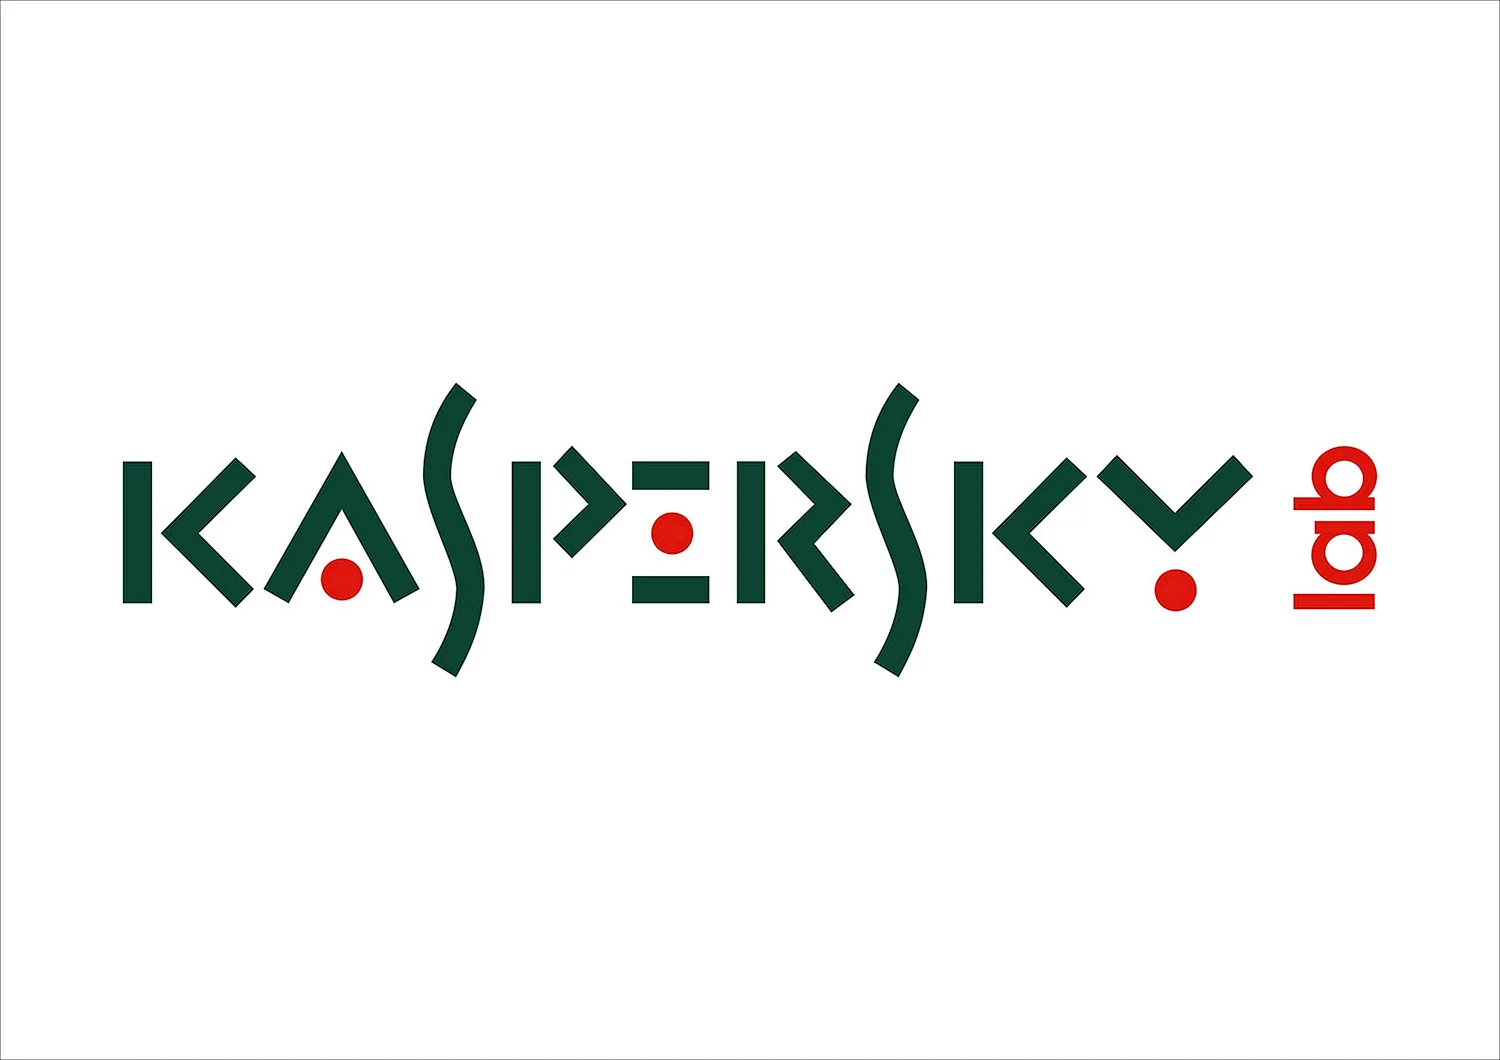 Касперский эмблема